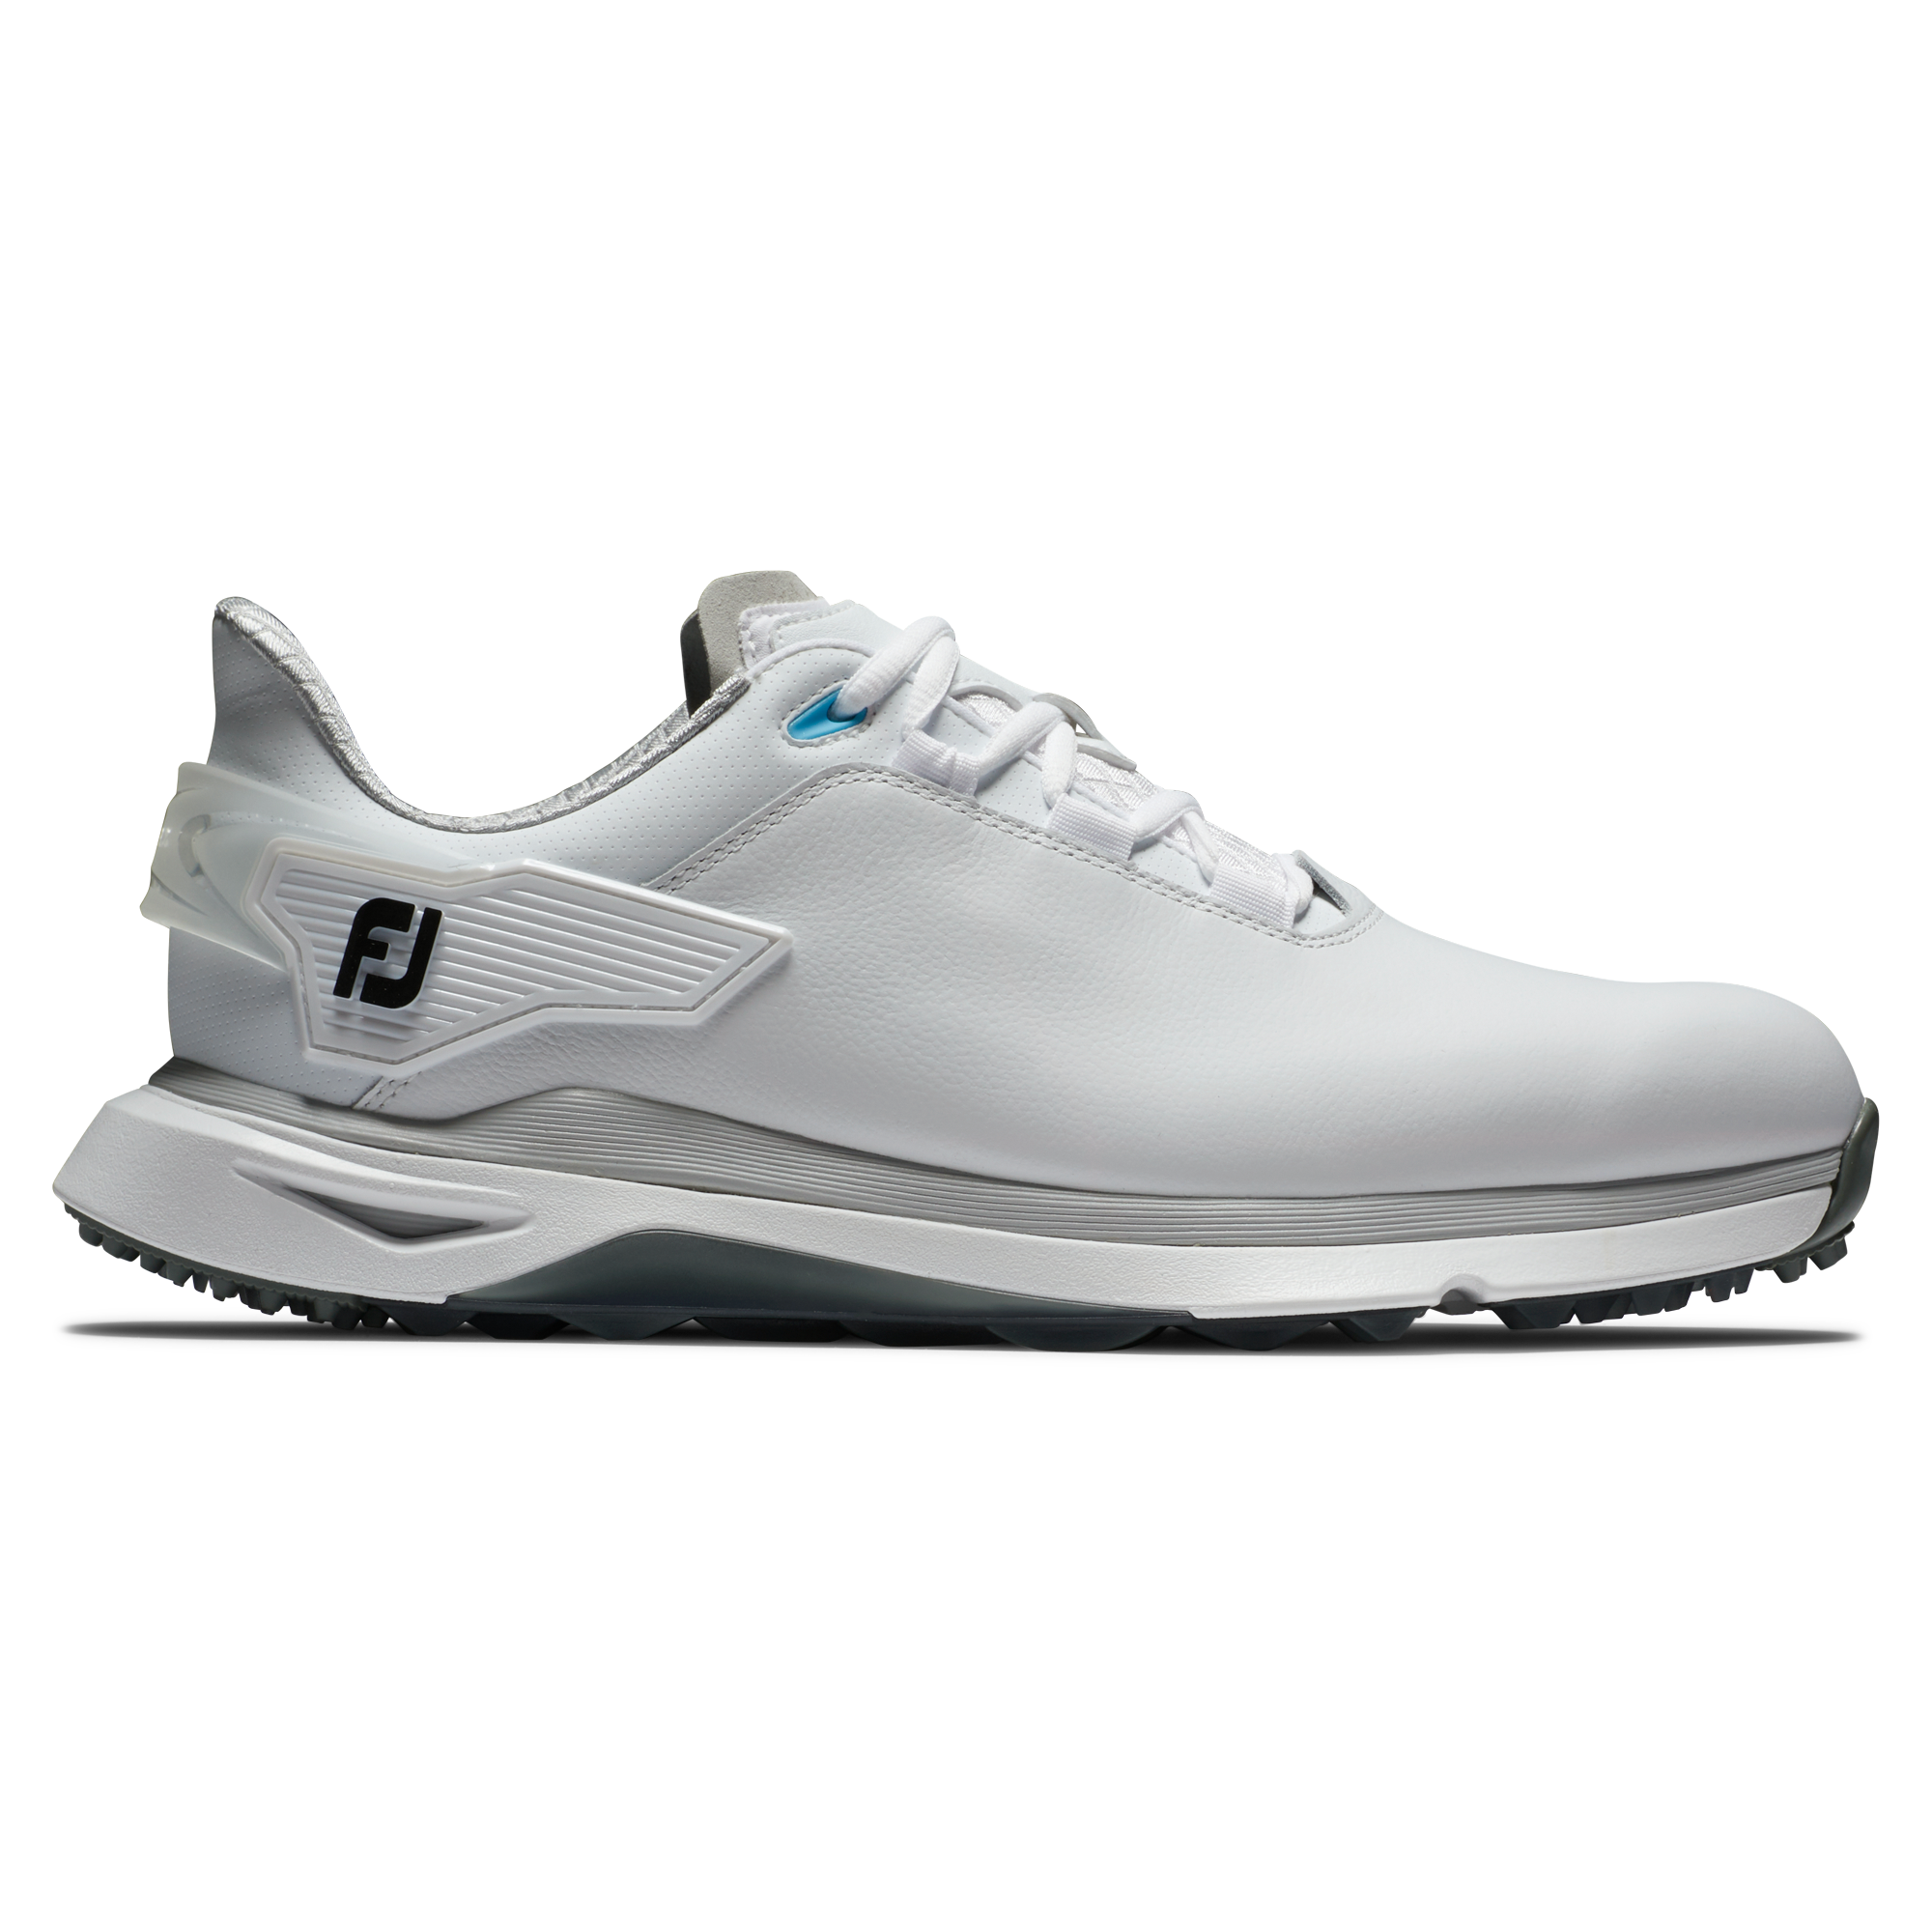 FootJoy Pro/SLX Wide pánské golfové boty, bílé/šedé, vel. 9,5 UK